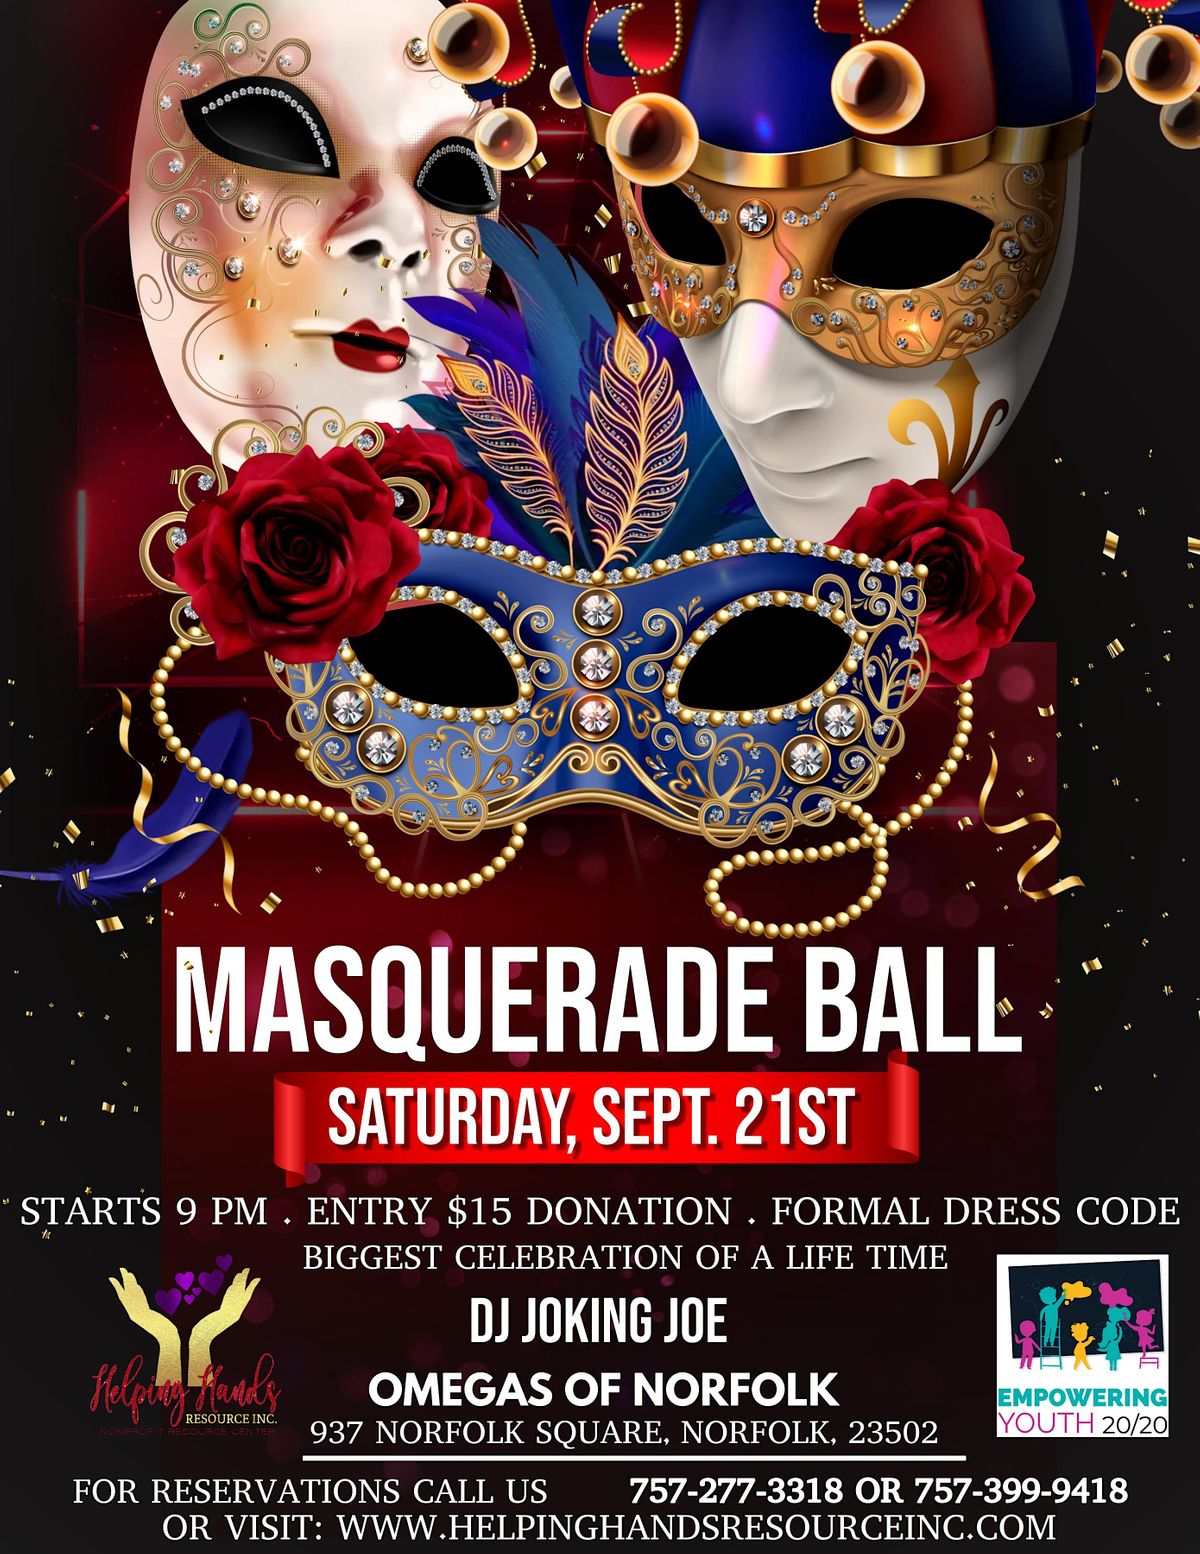 Masquerade Ball Fundraiser